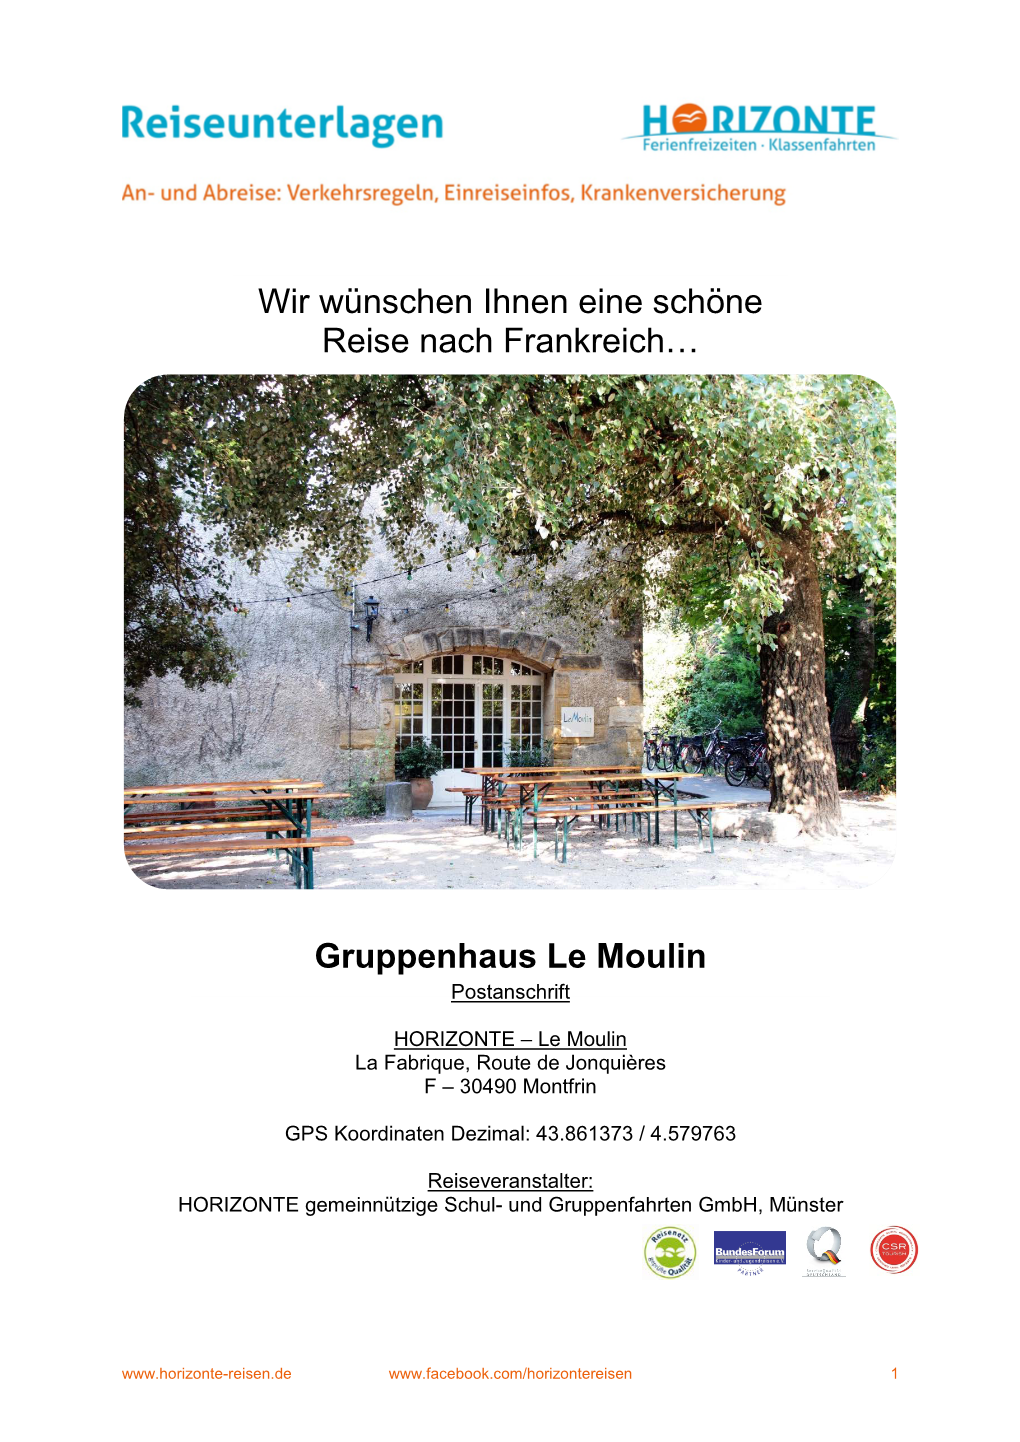 Gruppenhaus Le Moulin Postanschrift